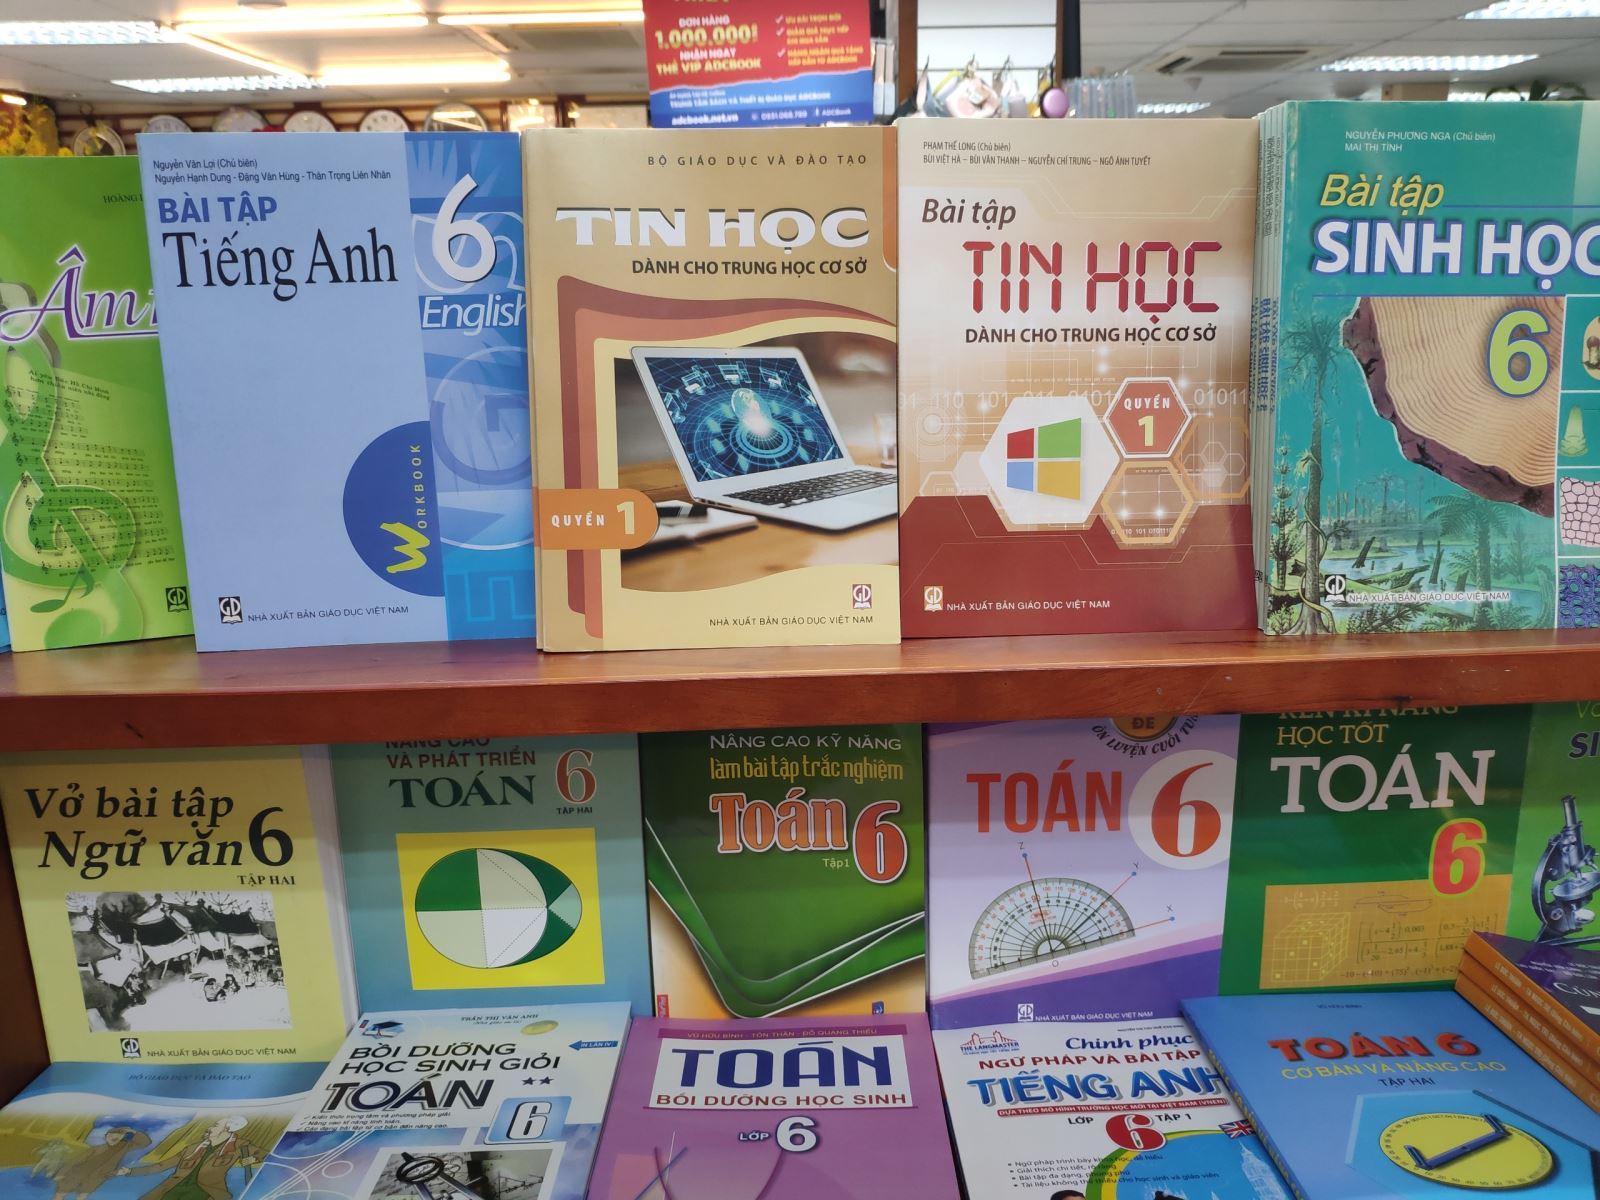 Công ty Cao Thuận Phát in lậu sách, có dấu hiệu vi phạm hình sự